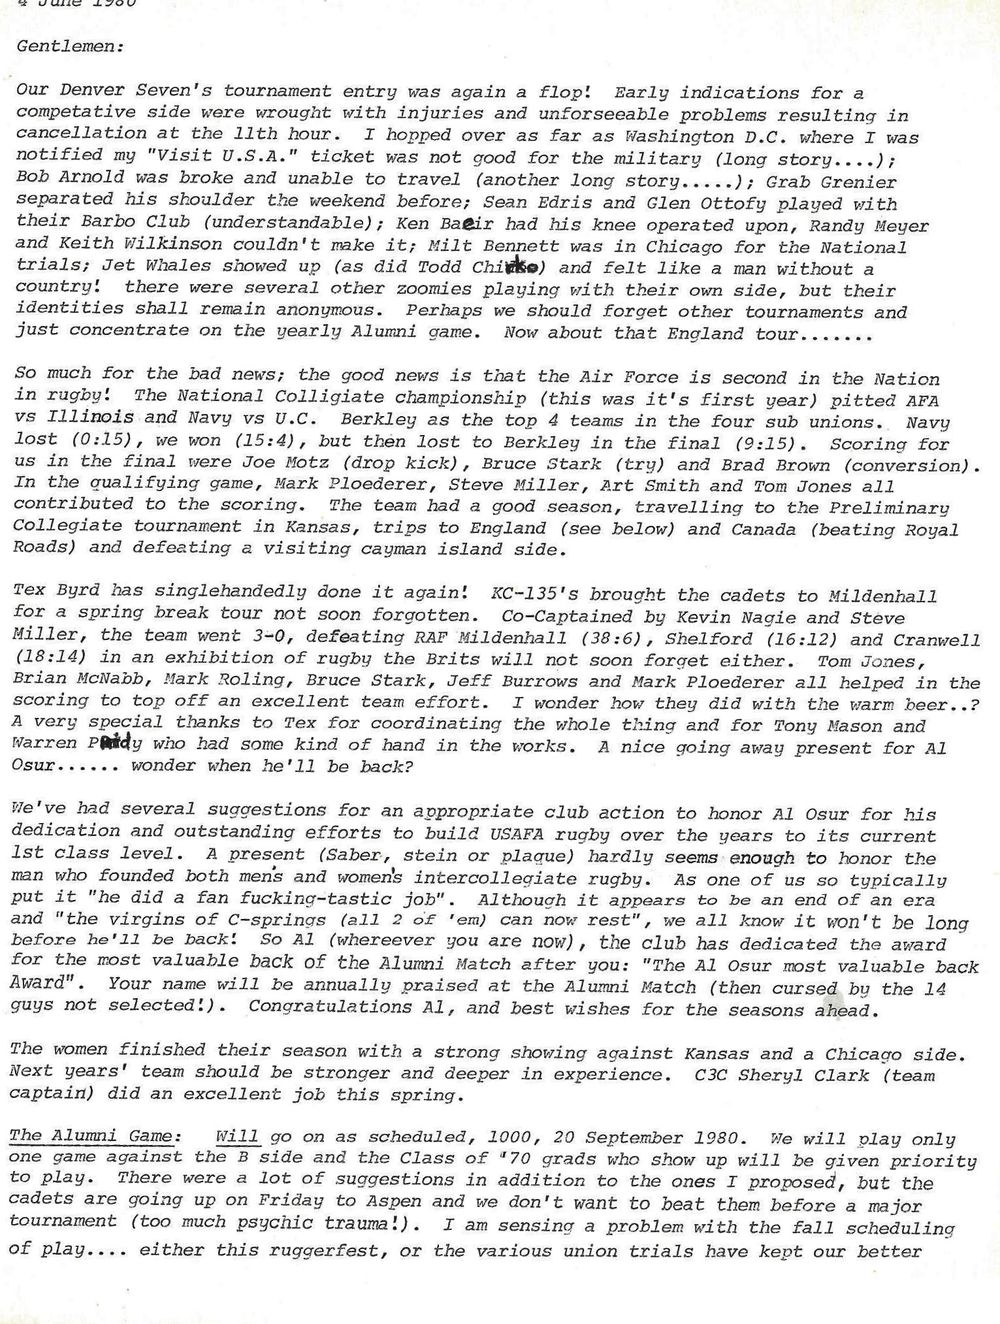 1980 06 Newsletter 1.jpg